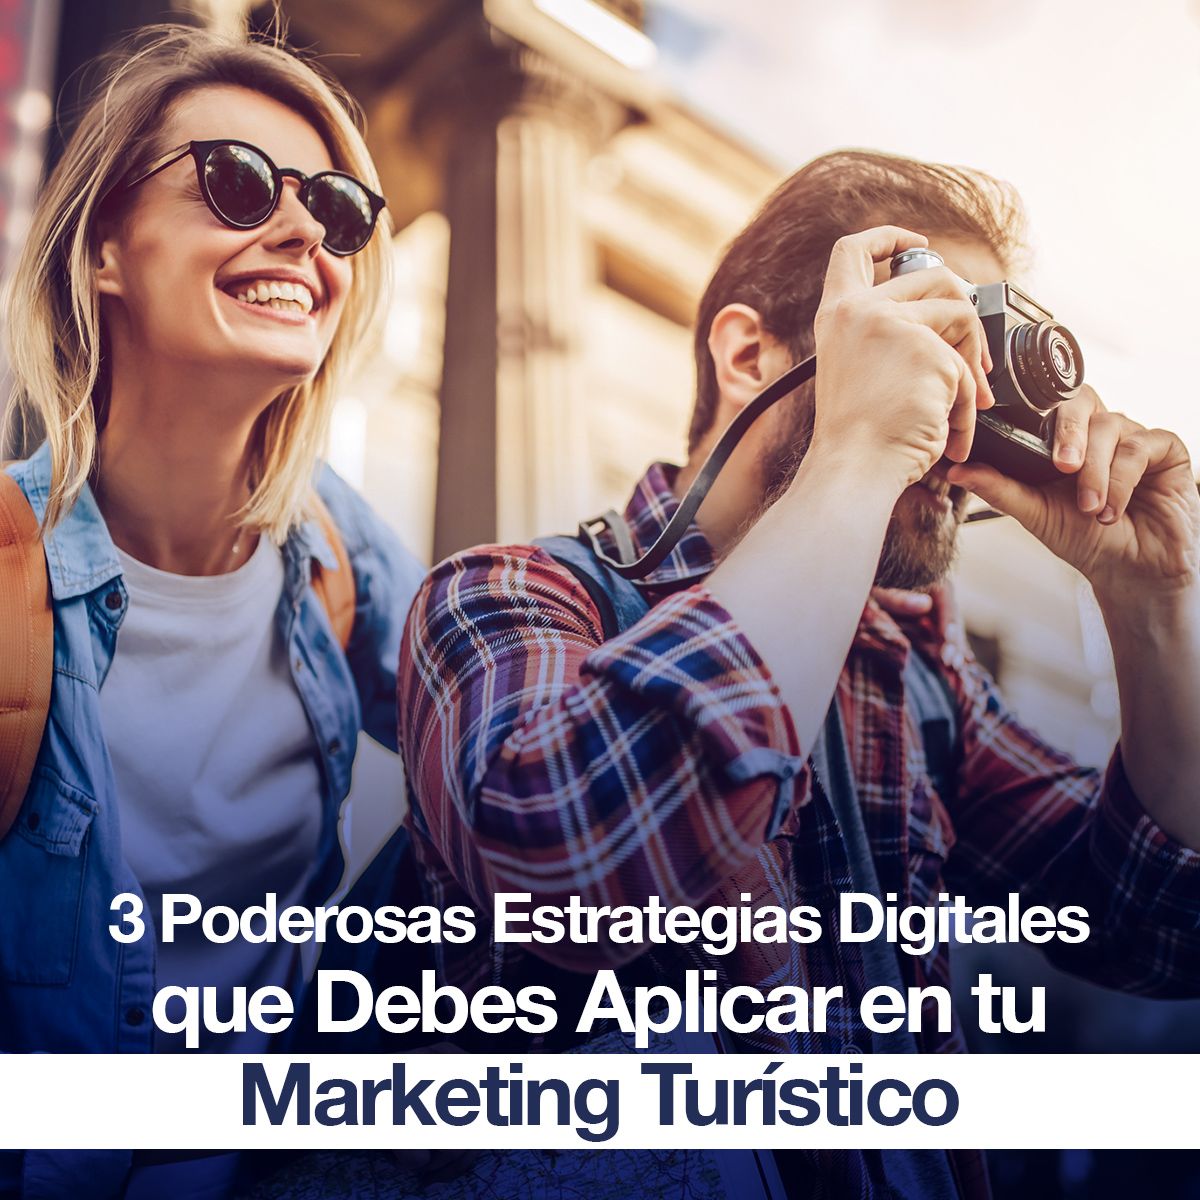 3 Poderosas Estrategias Digitales que Debes Aplicar en tu Marketing Turístico